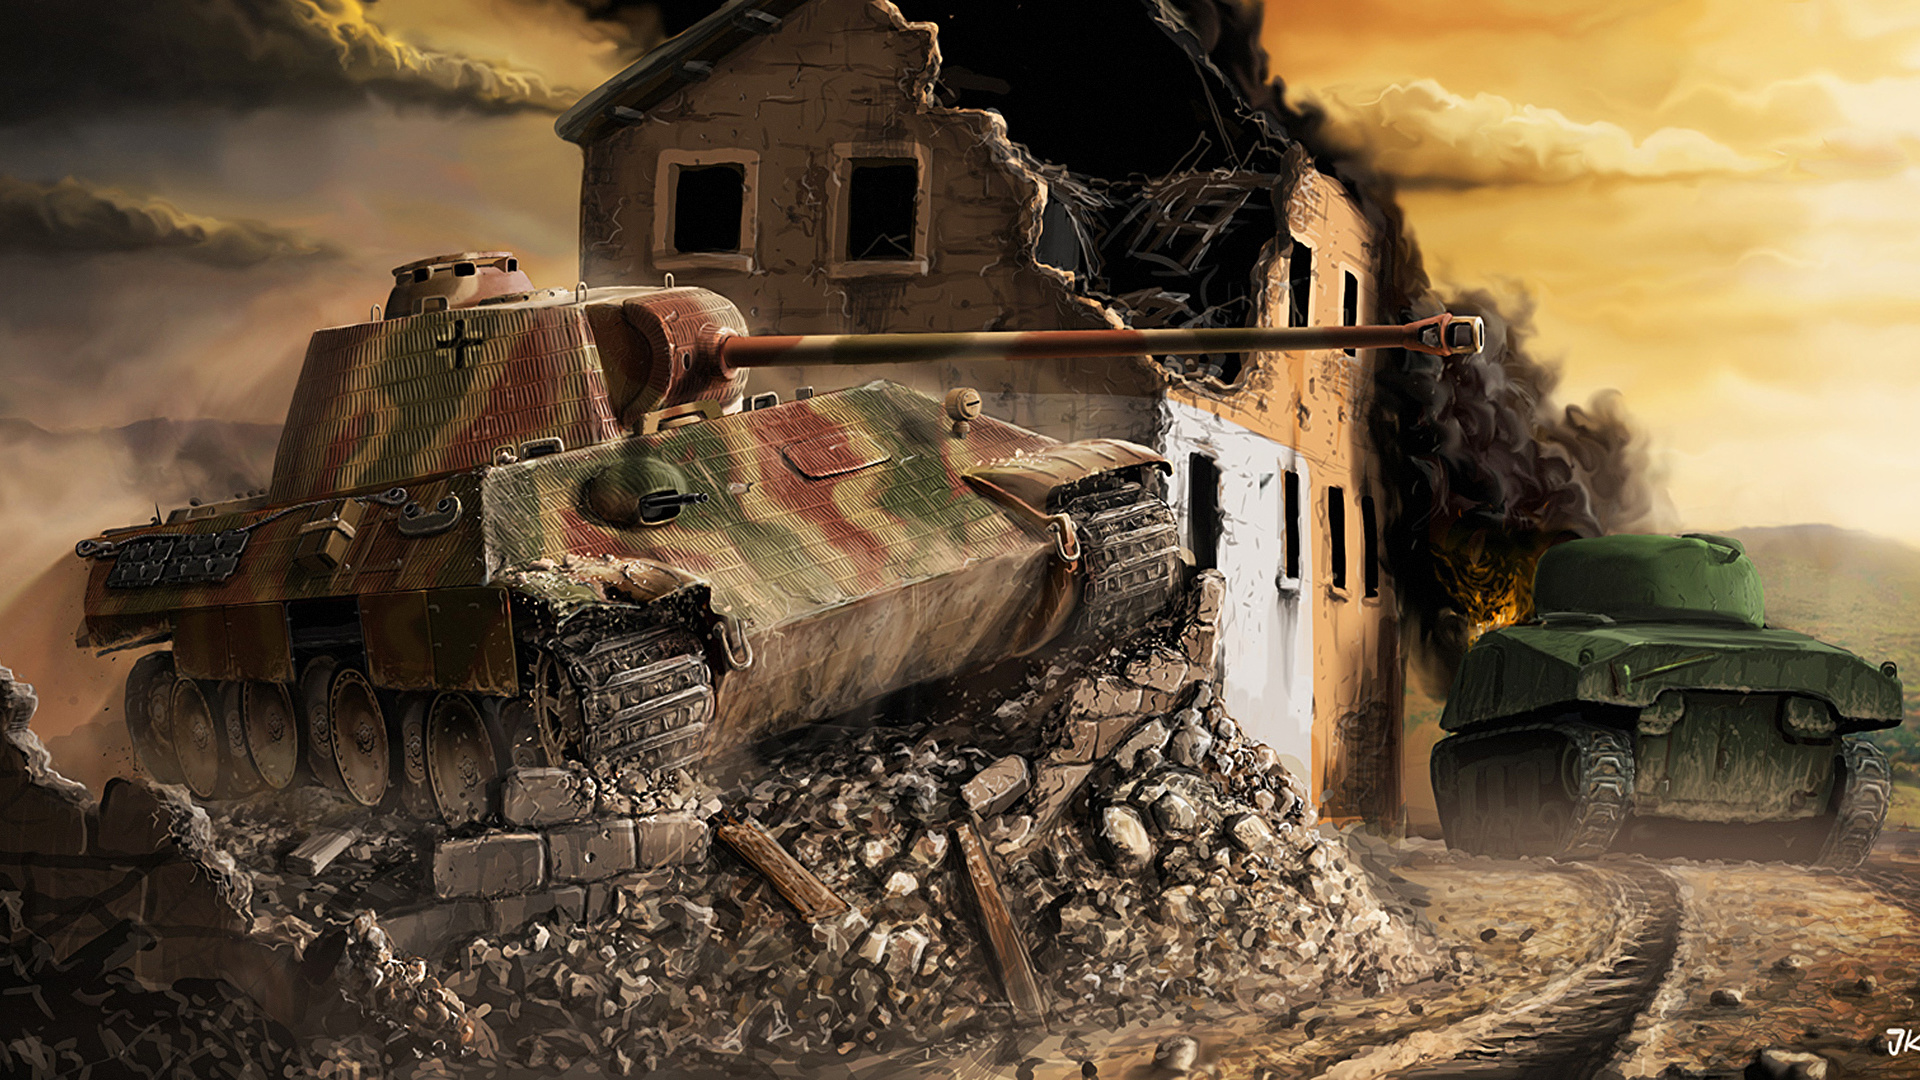 壁紙 19x1080 ワールドオブタンクス 戦車 廃墟 描かれた壁紙 Panther Sherman ゲーム ダウンロード 写真